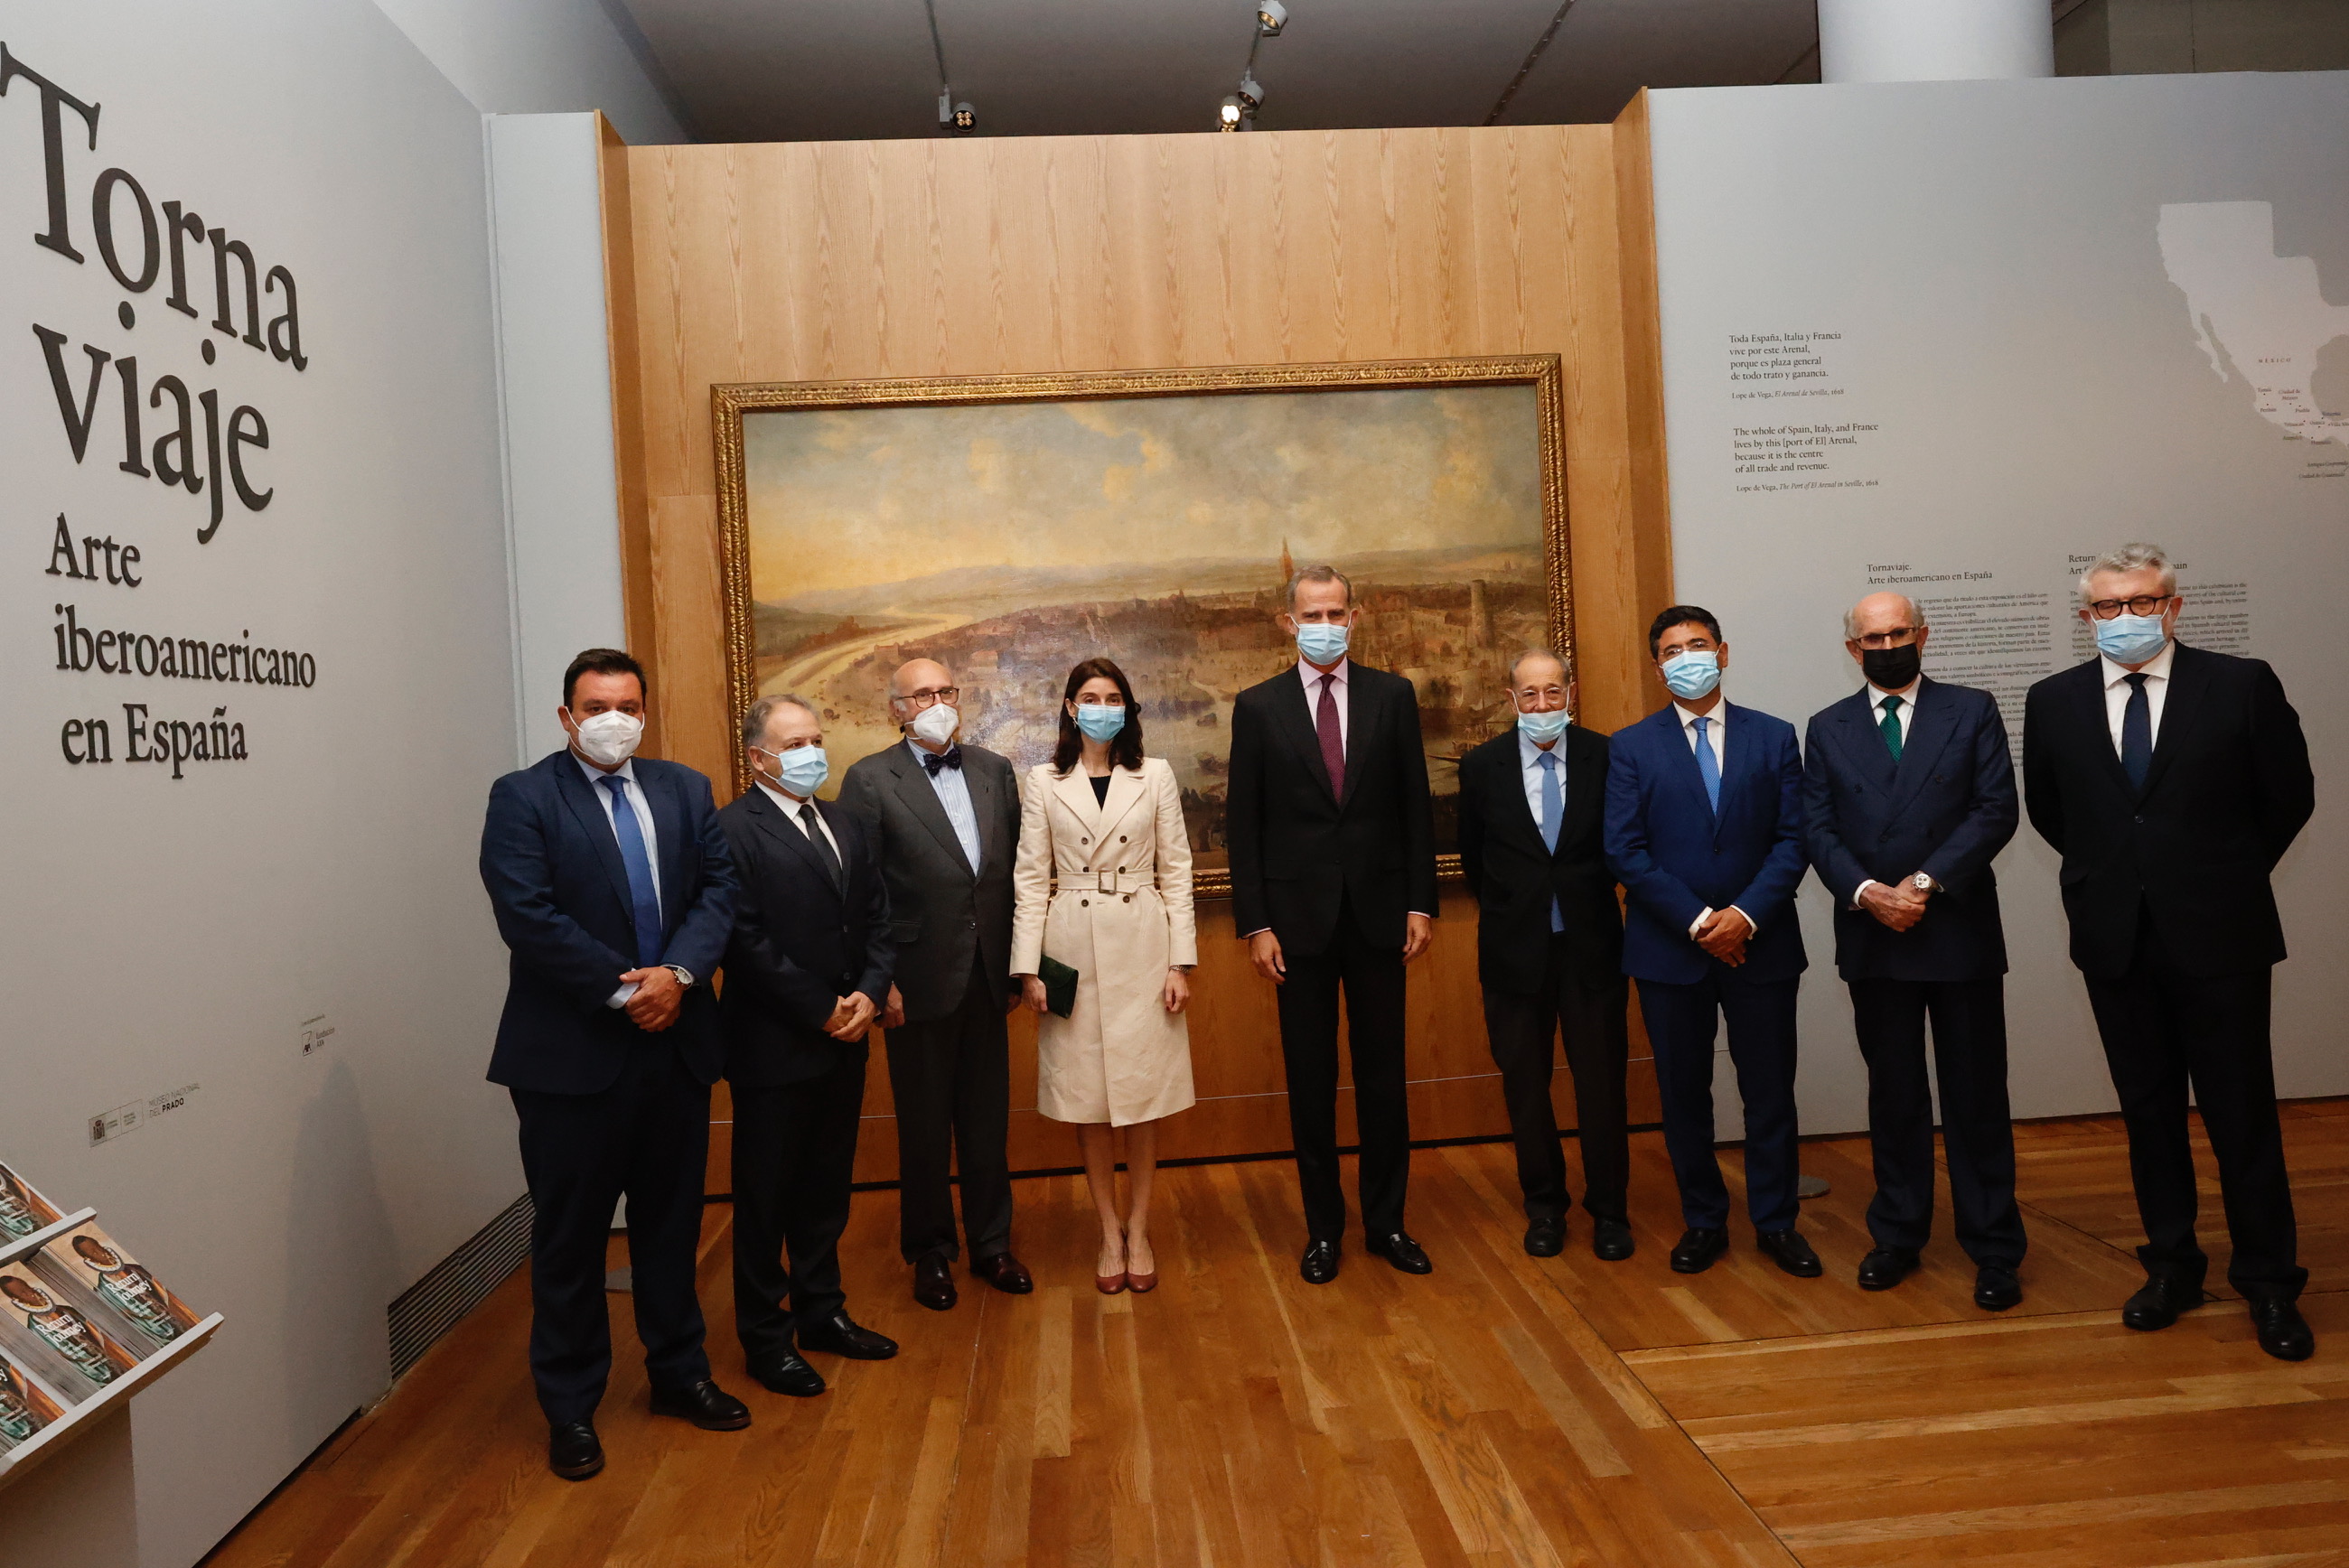 El catedrático de la UGR Rafael López Guzmán comisaría la exposición del Museo del Prado ‘Tornaviaje. Arte iberoamericano en España’